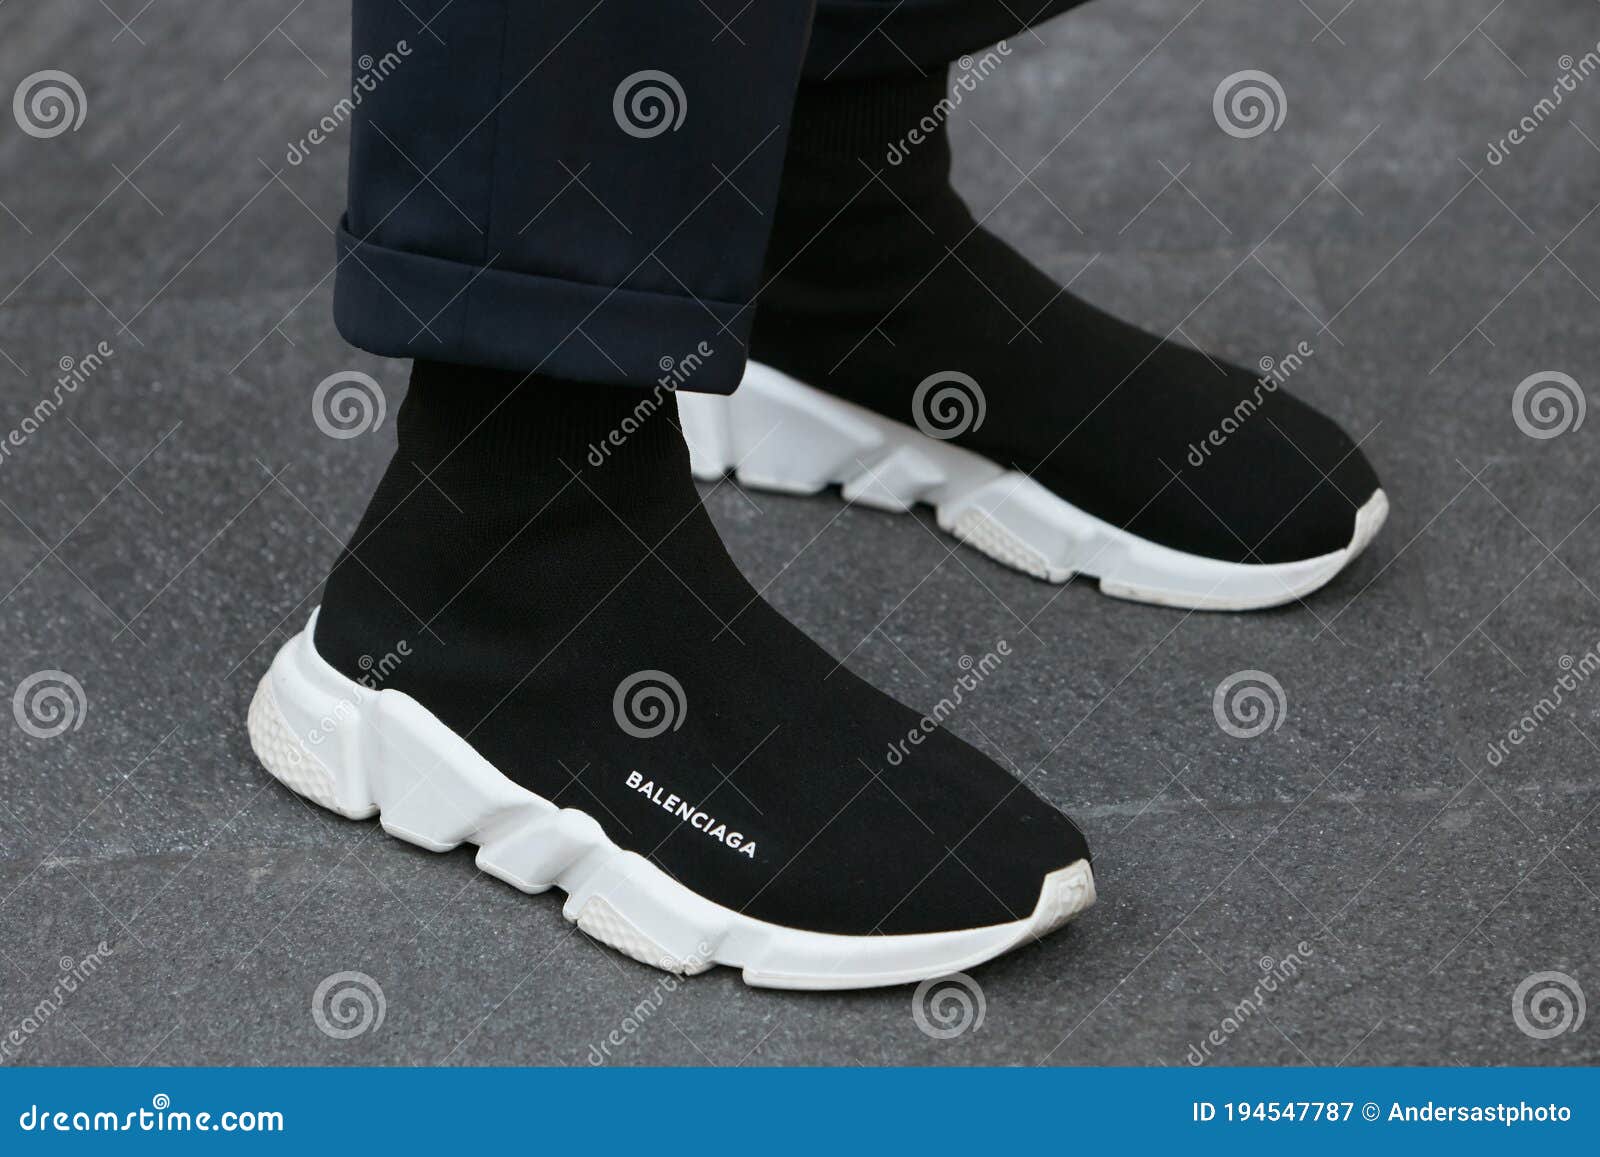 Hombre Con Balenciaga Zapatos Negros Y Blancos Antes De Armani Show De Moda Milan Semana Estilo Fotografía - Imagen de gente, blanco: 194547787